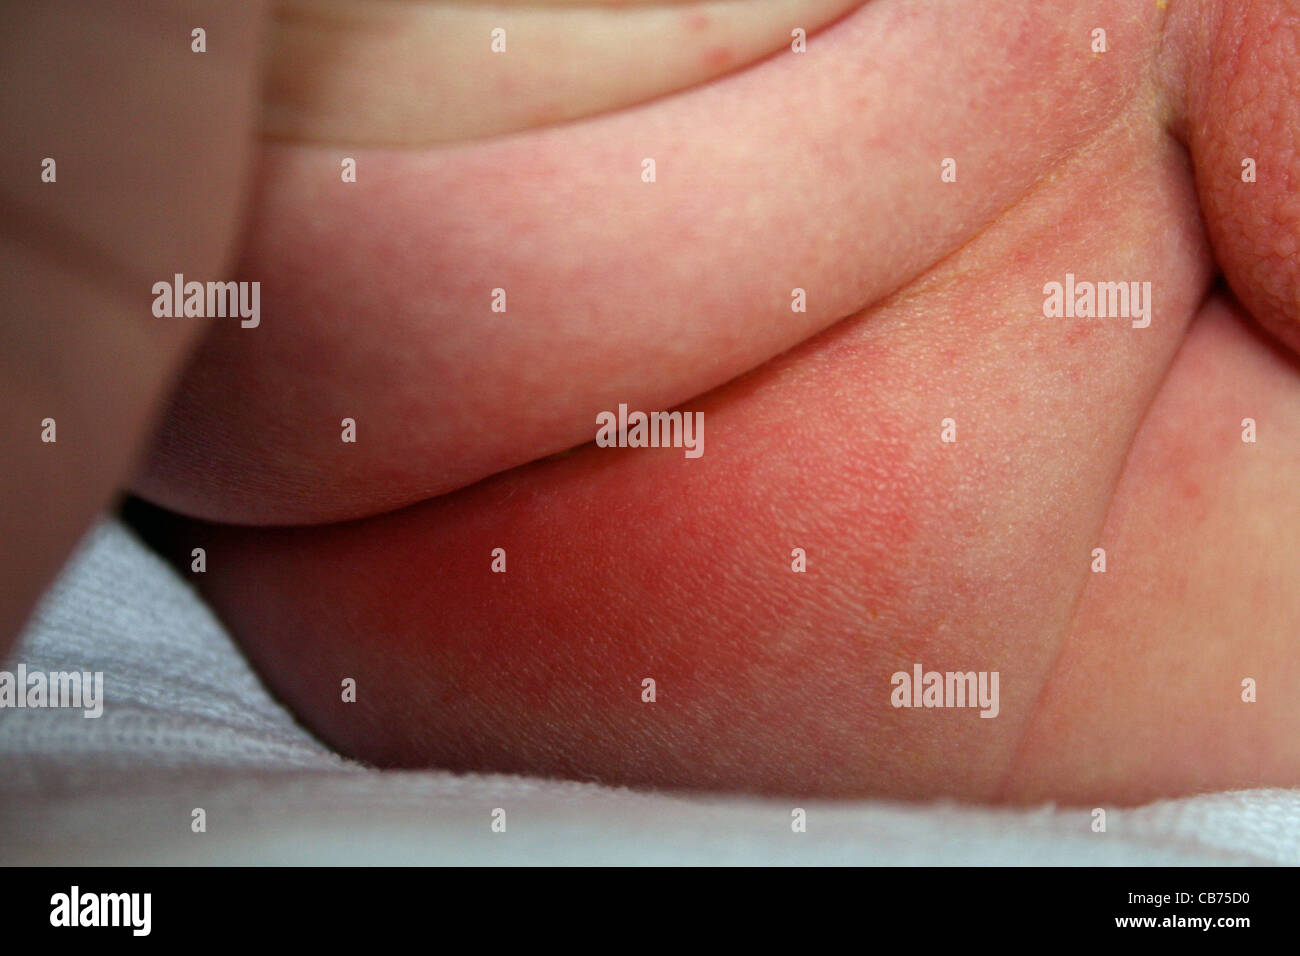 Sarpullido del pañal del bebé en la parte inferior Fotografía de stock -  Alamy